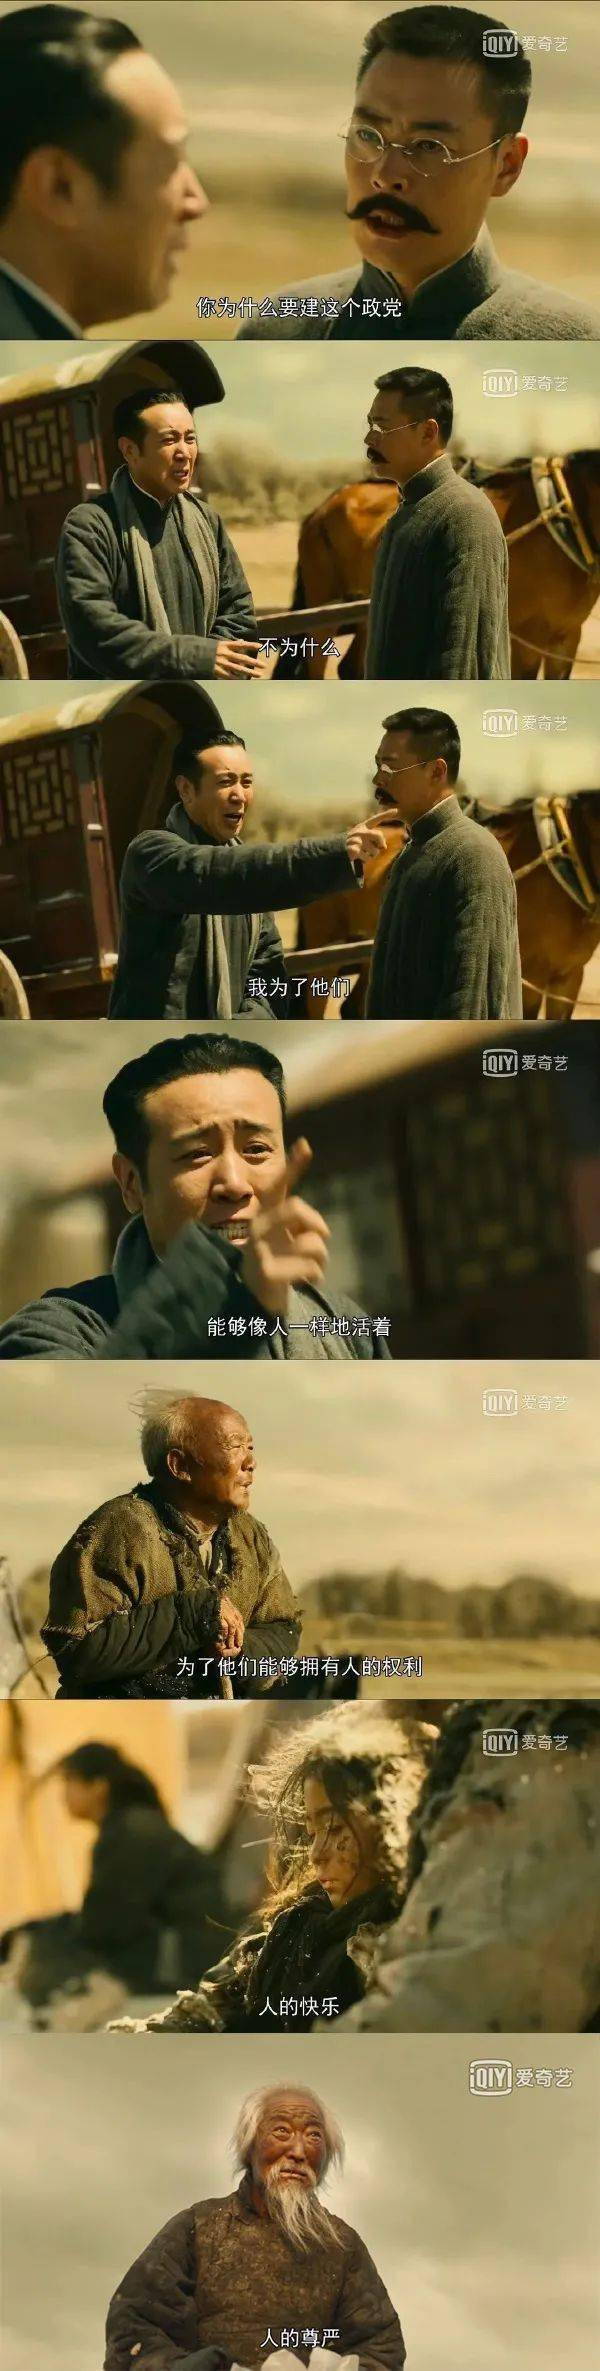 作为中国共产党成立100周年的献礼片 "觉醒年代" 贡献出不俗的成绩 从